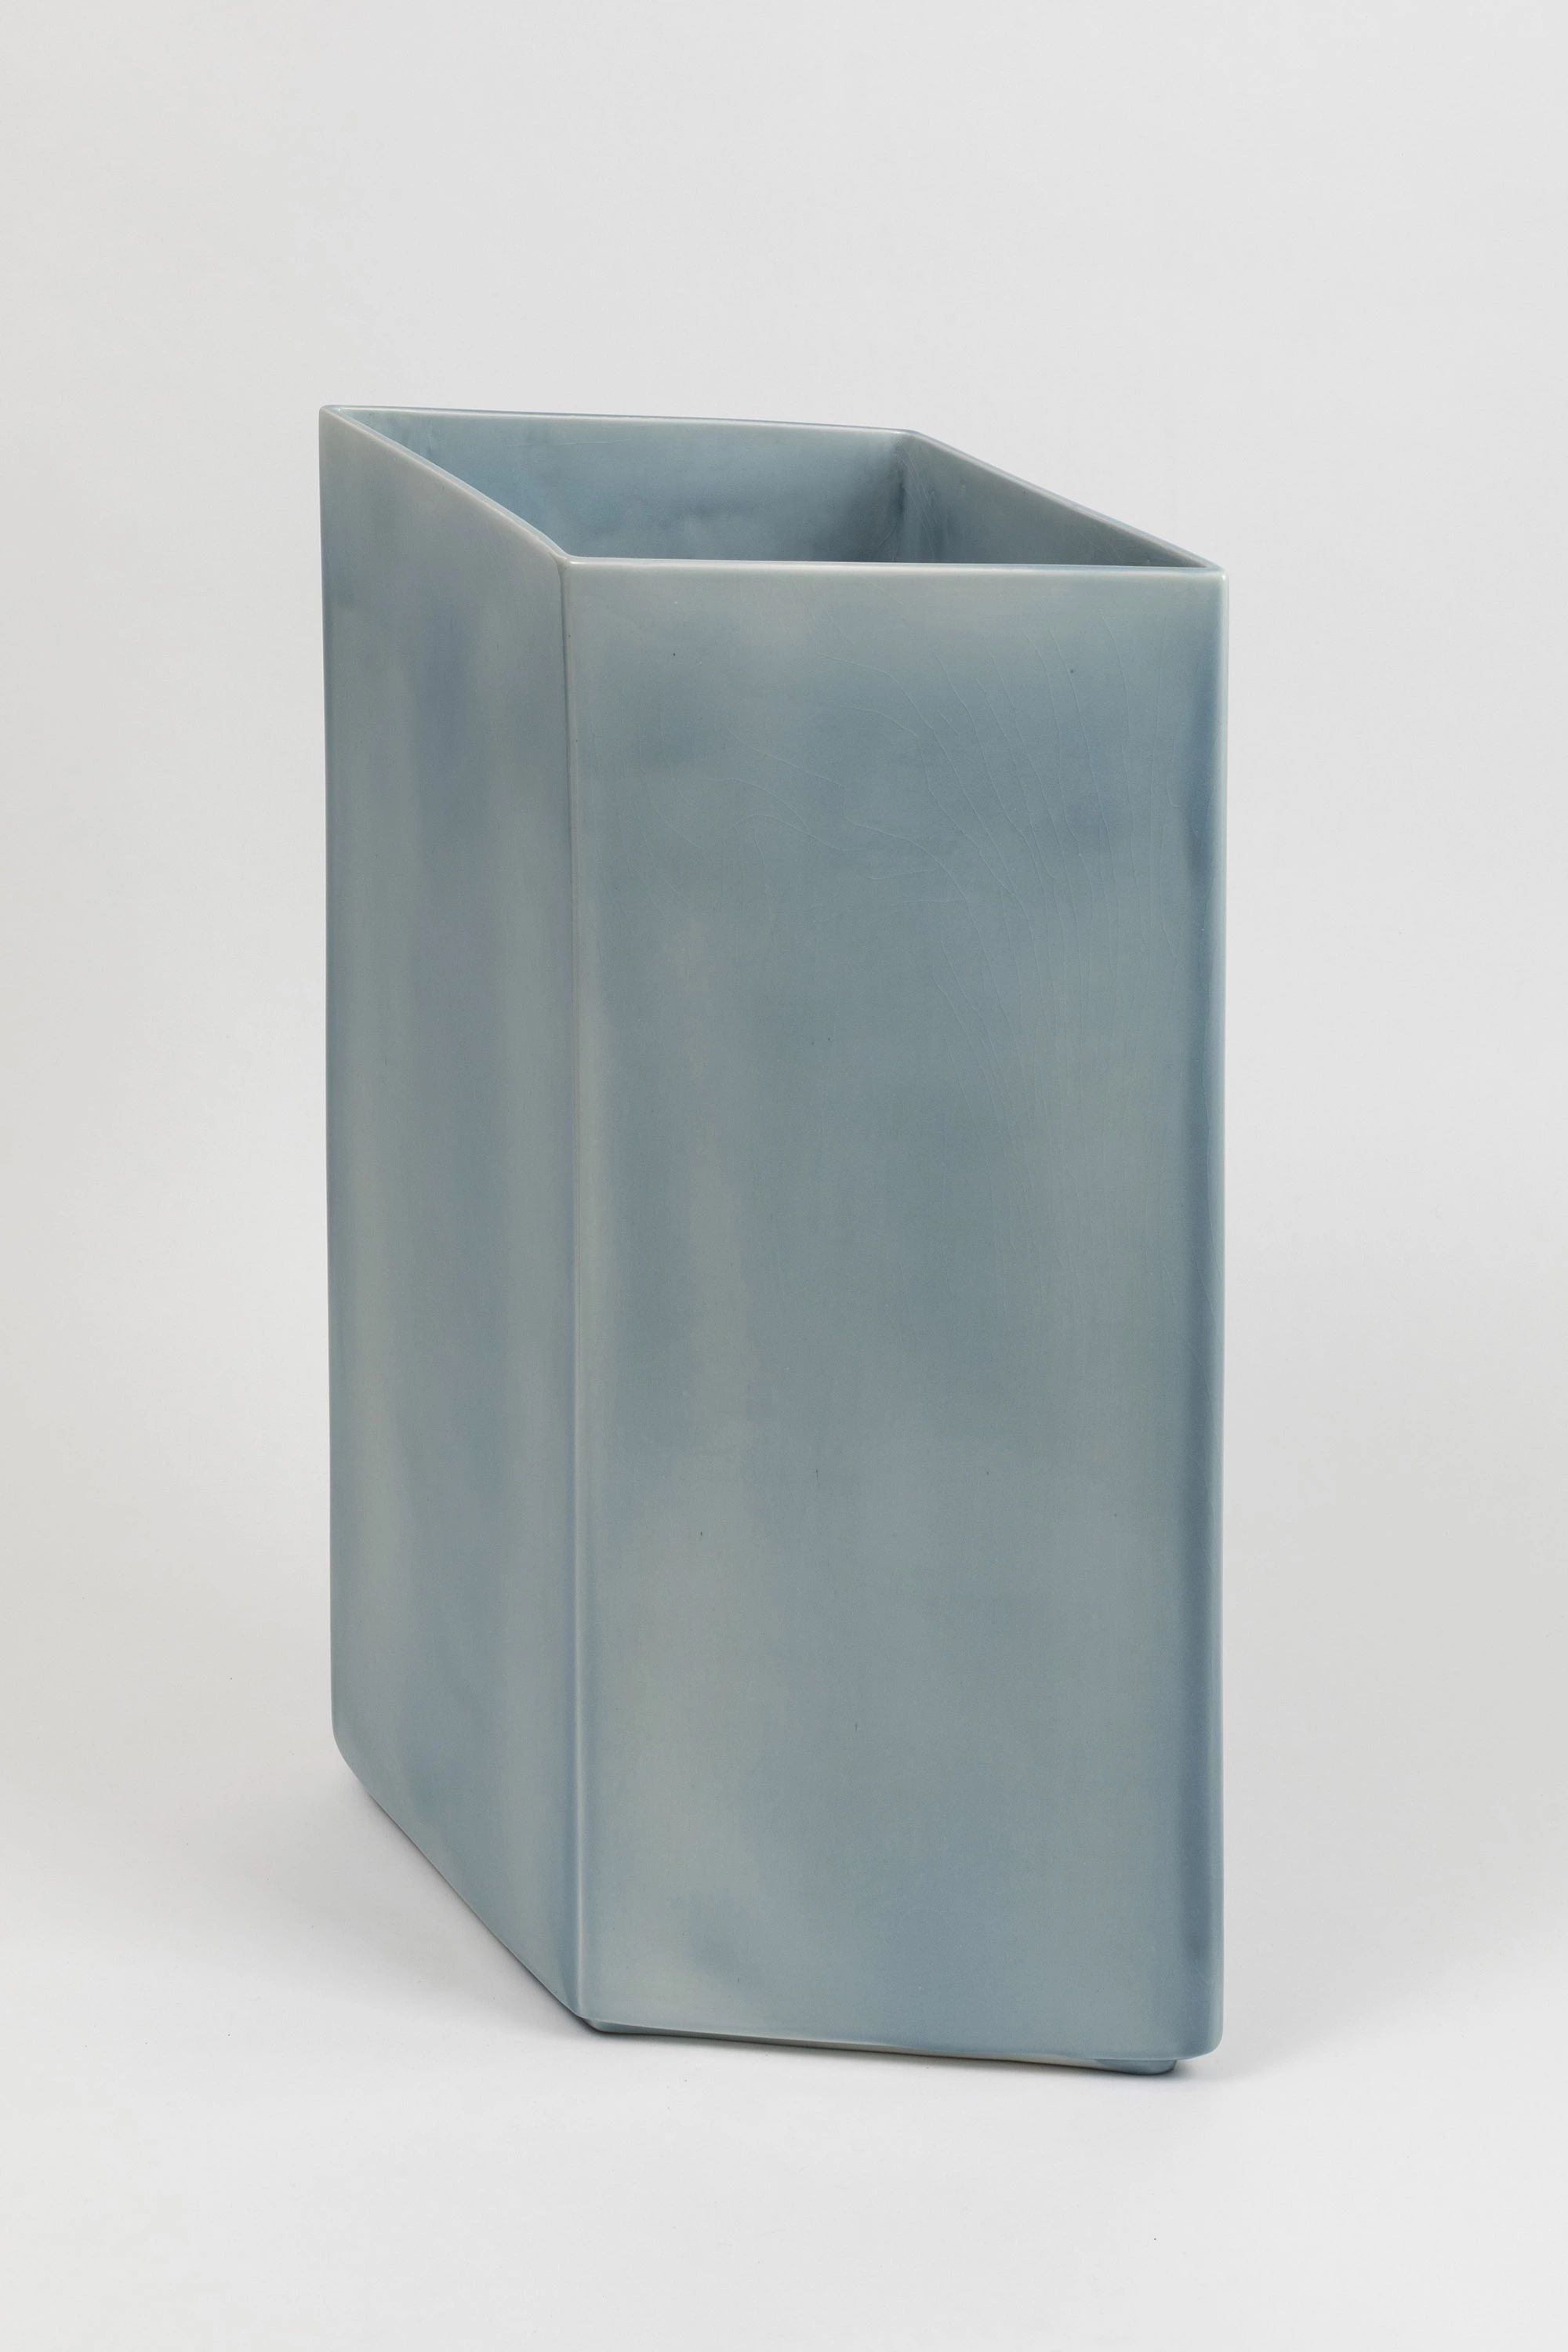 Vase Losange 67 blue - Ronan & Erwan Bouroullec - Vase - Galerie kreo